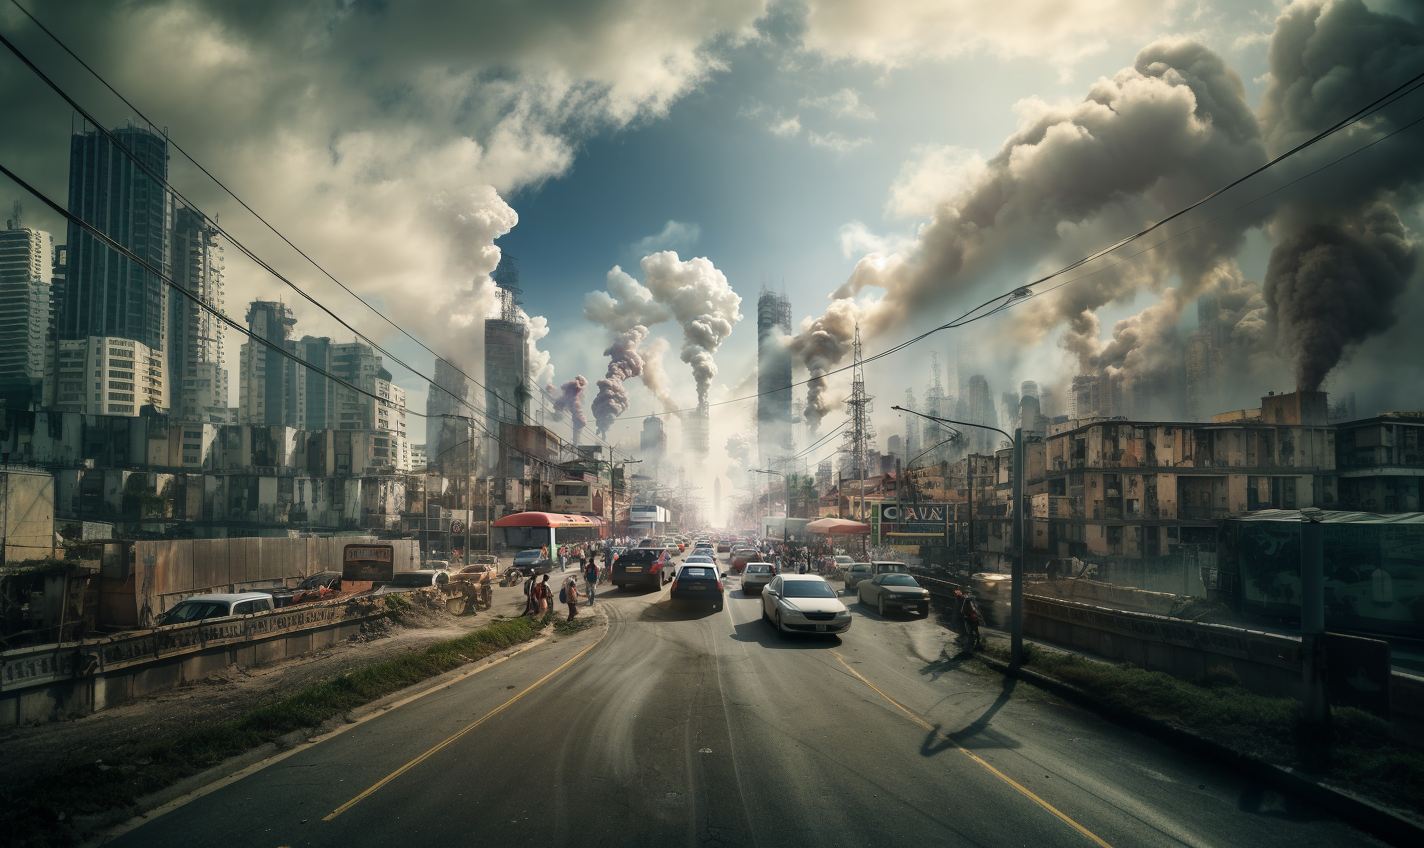 Dampak Pencemaran Udara: Ancaman Nyata bagi Kesehatan Manusia